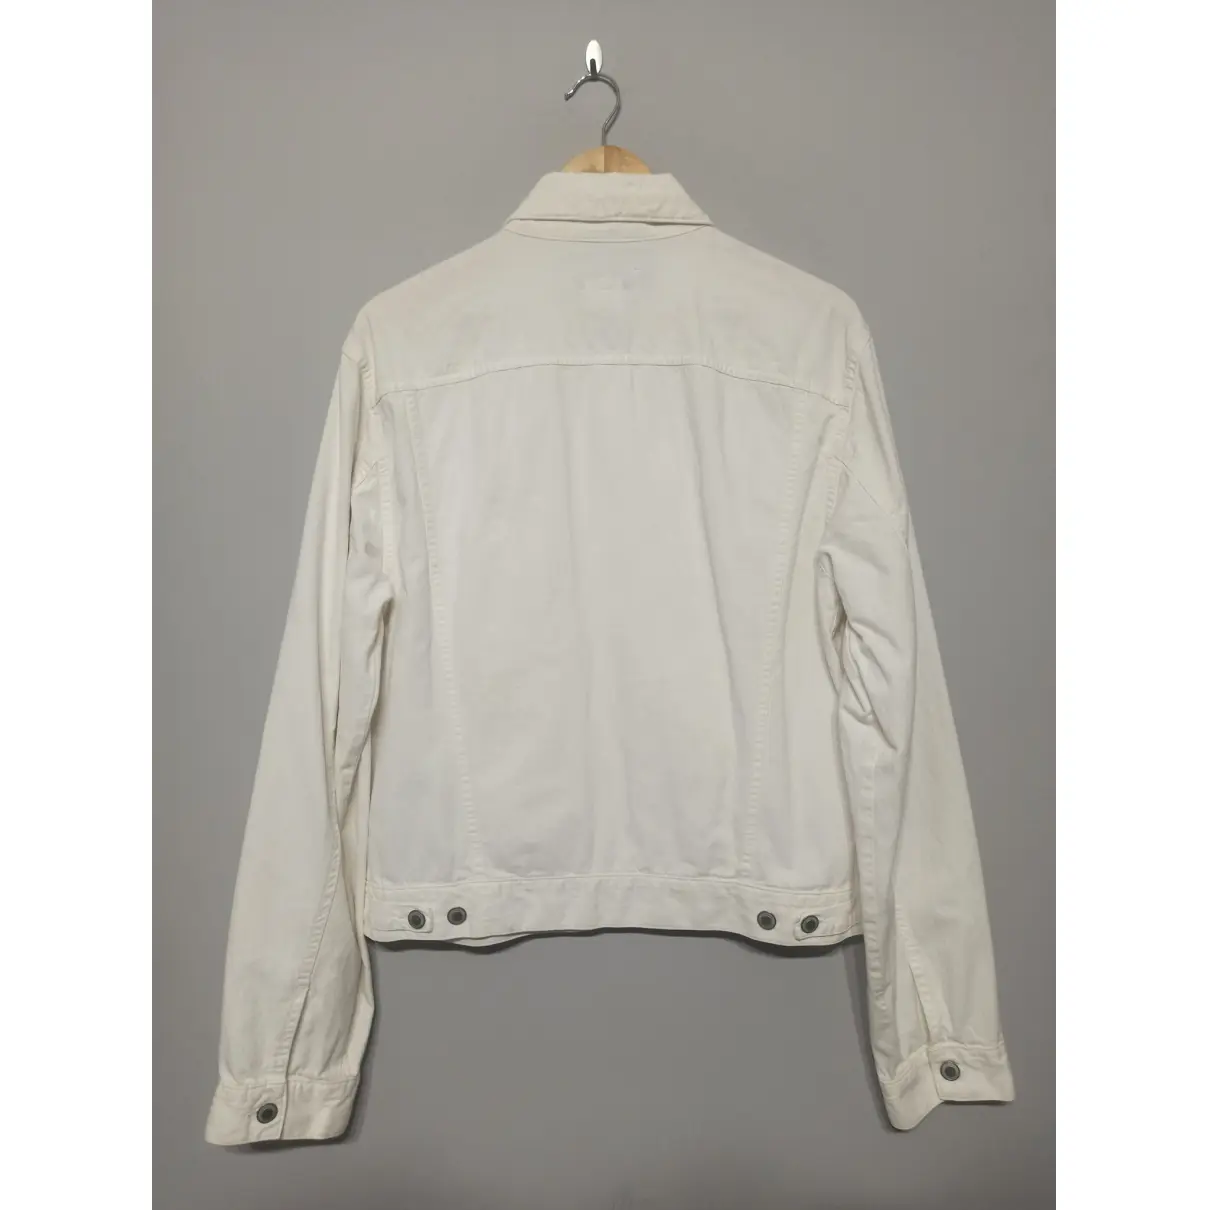 Buy Dries Van Noten Jacket online - Vintage